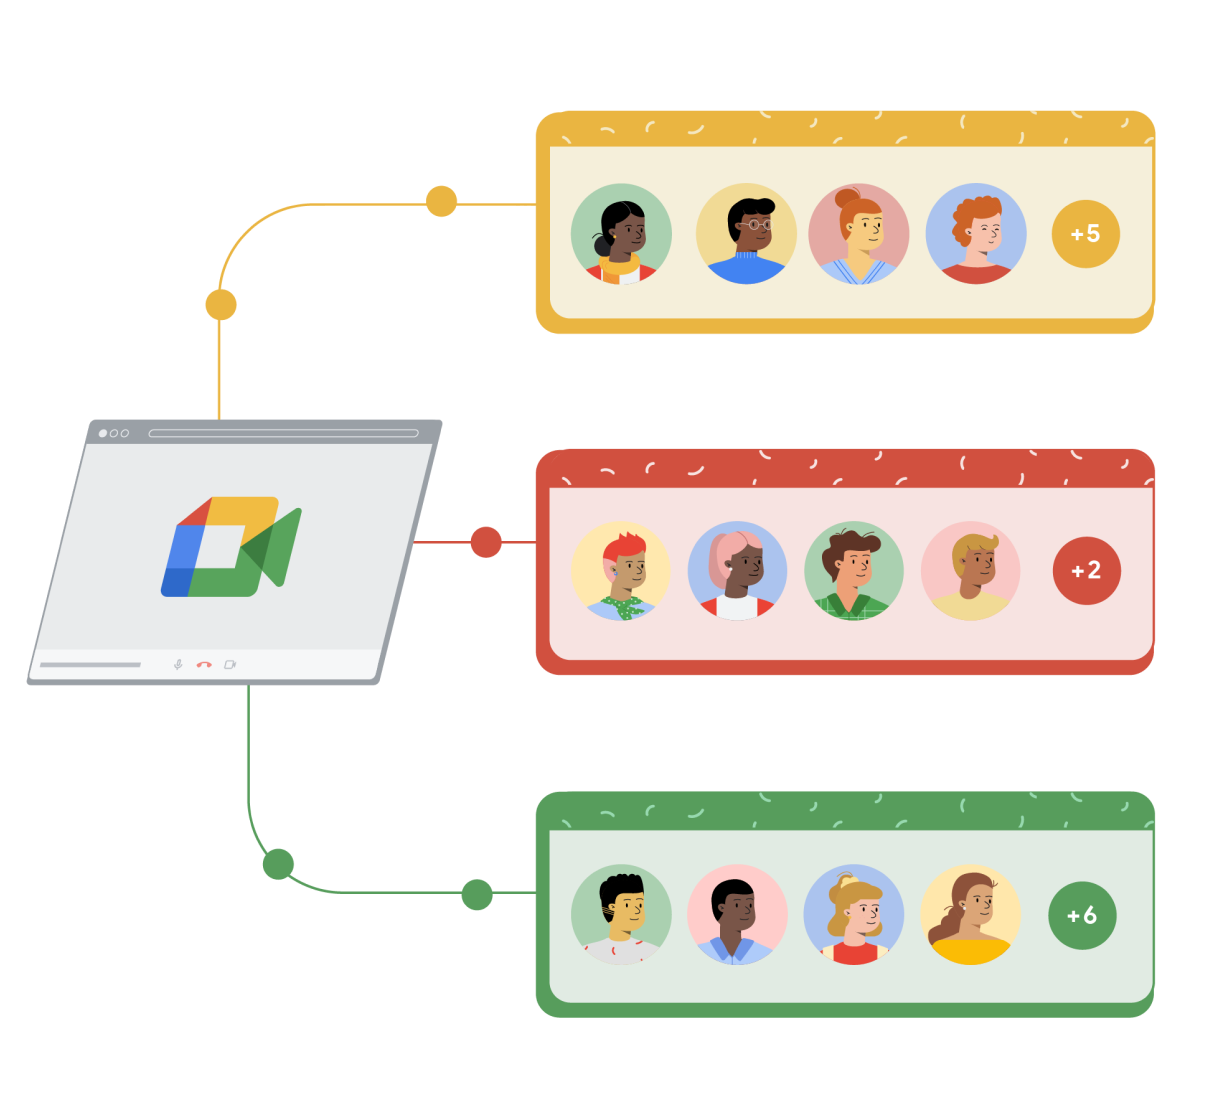 Google Meetin selainikkuna on yhdistetty viivoilla keltaiseen, punaiseen ja vihreään suorakulmioon. Kaikissa kolmessa suorakulmiossa on neljä piirroshahmoa sisältävää ympyrää ja oikeassa reunassa viides ympyrä, jonka sisällä on plusmerkki ja muiden Google Meet ‑puheluun osallistuvien henkilöiden määrä numerona.